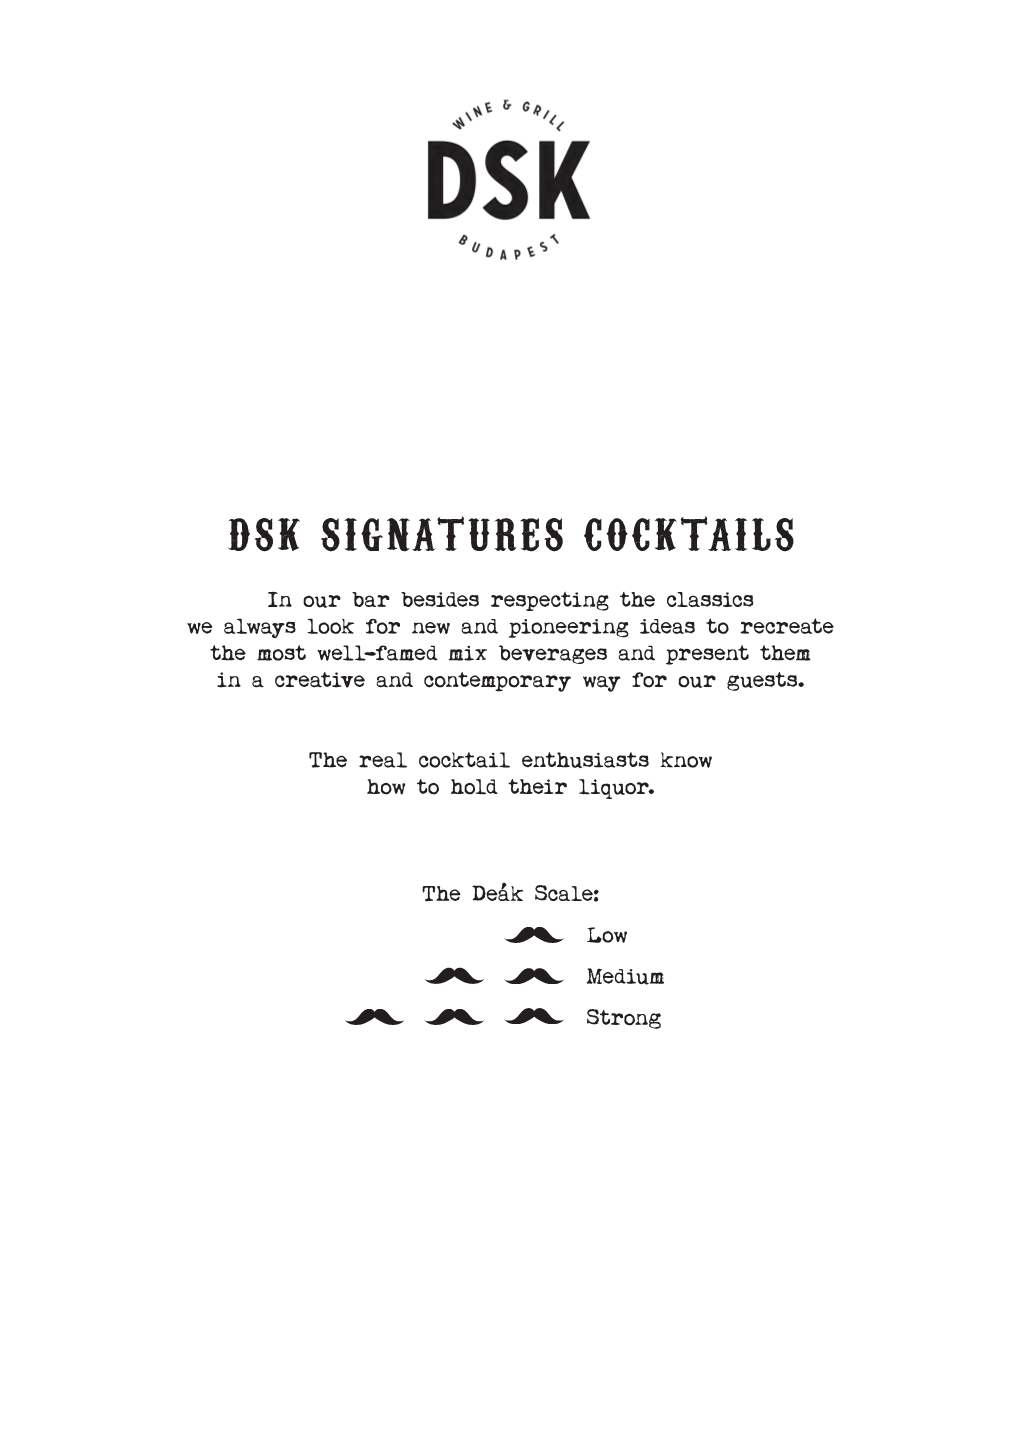 DSK Cocktails & Drinks Menu